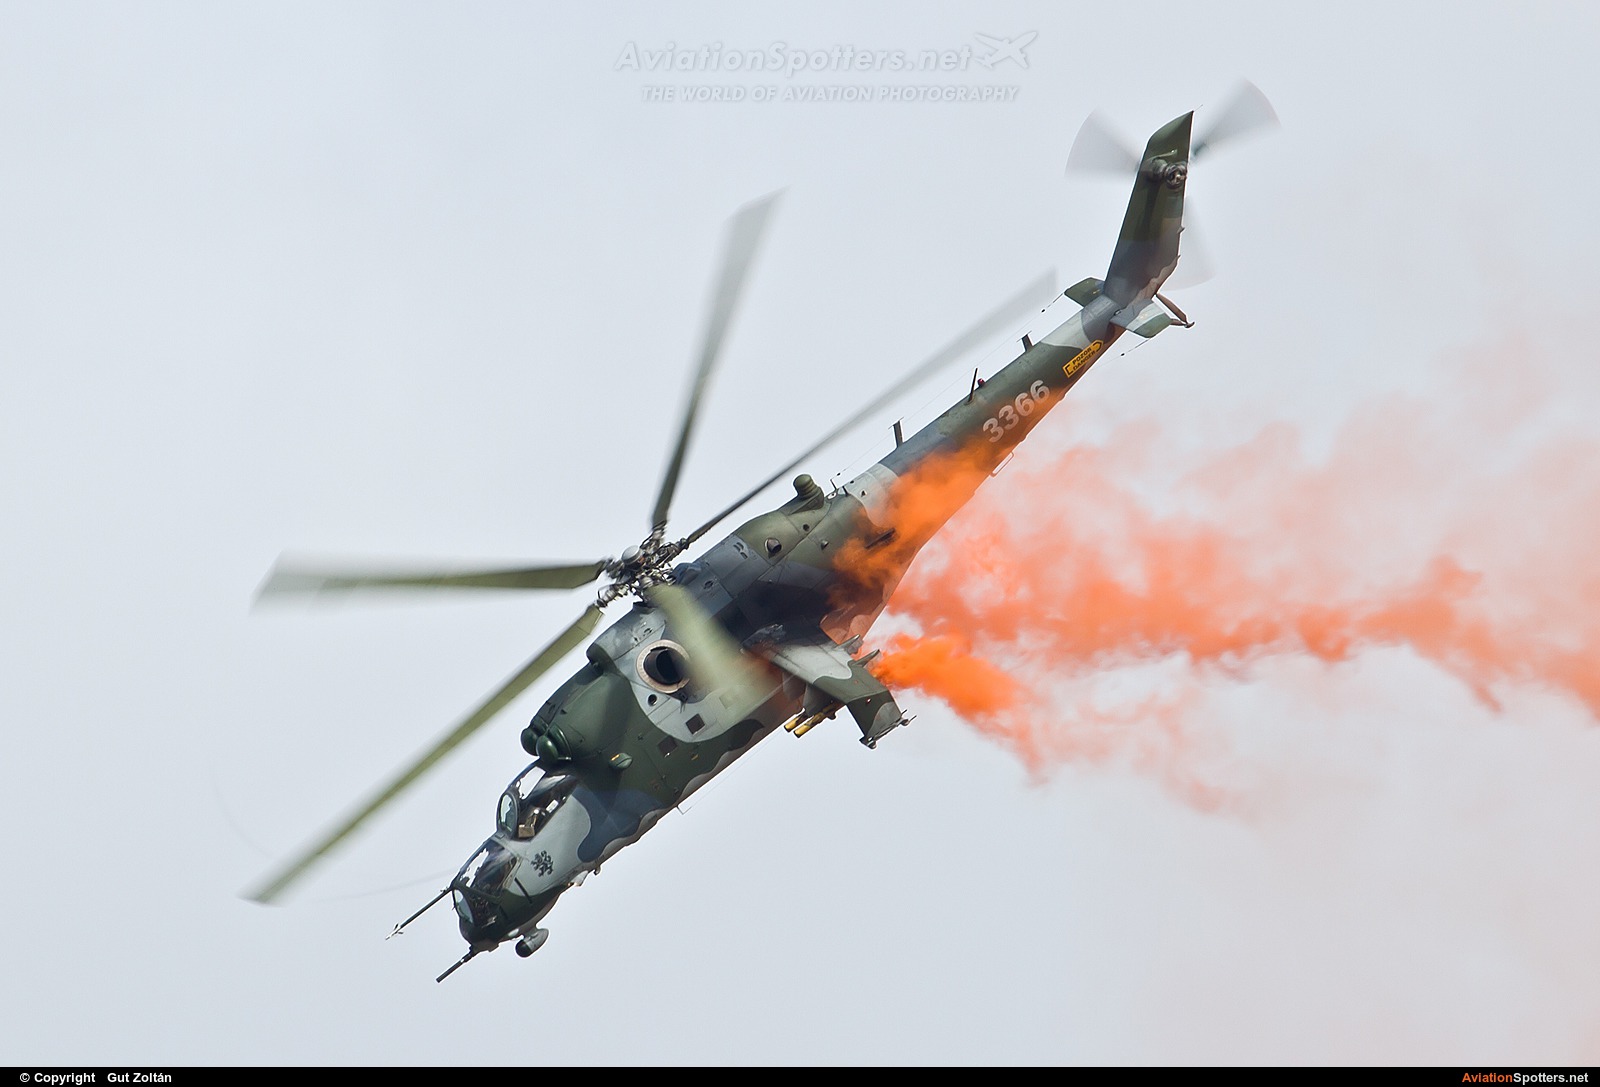 Czech - Air Force  -  Mi-35  (3366) By Gut Zoltán (gut zoltan)